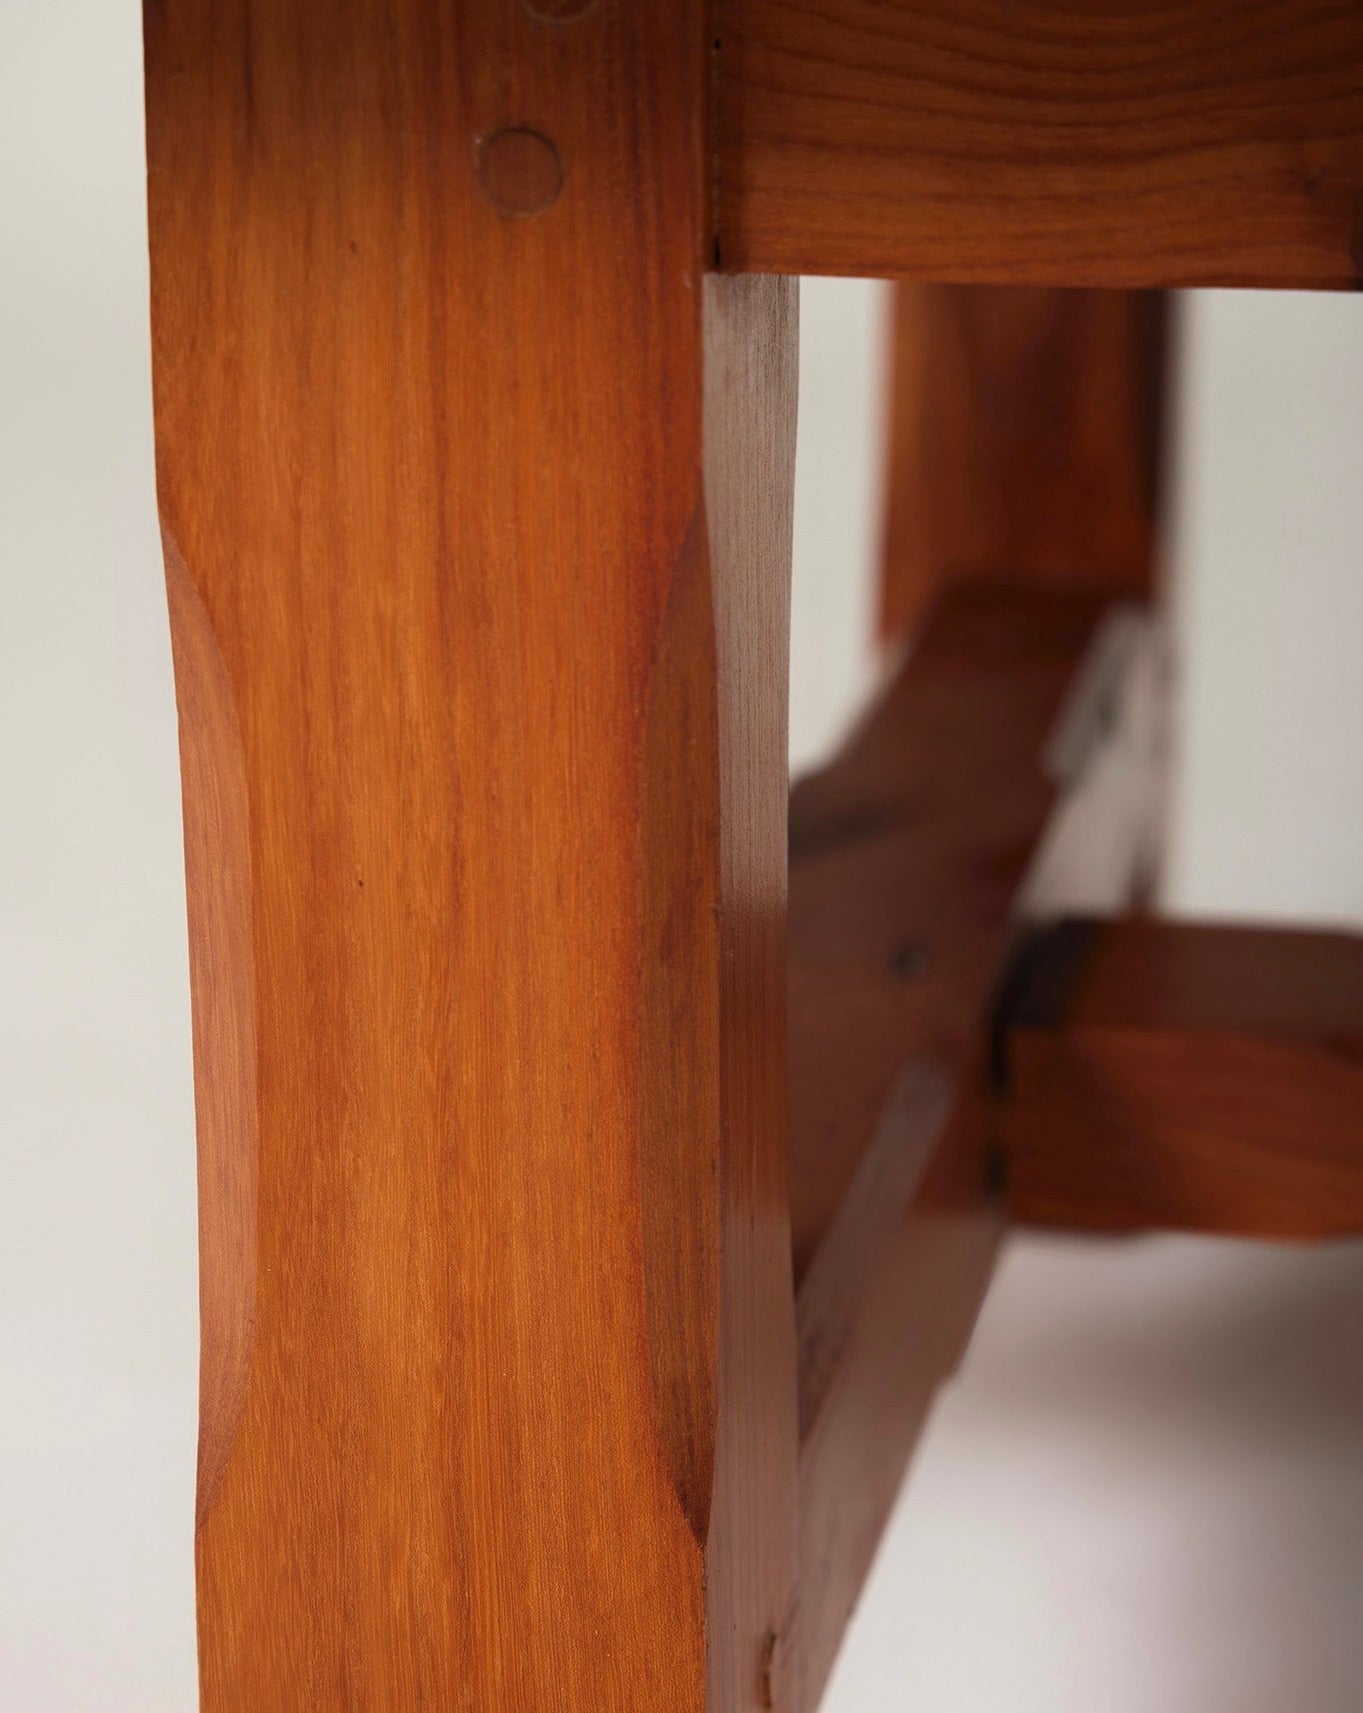 Table basse carrée en bois massif avec petite étagère sous le plateau. Très bon état.